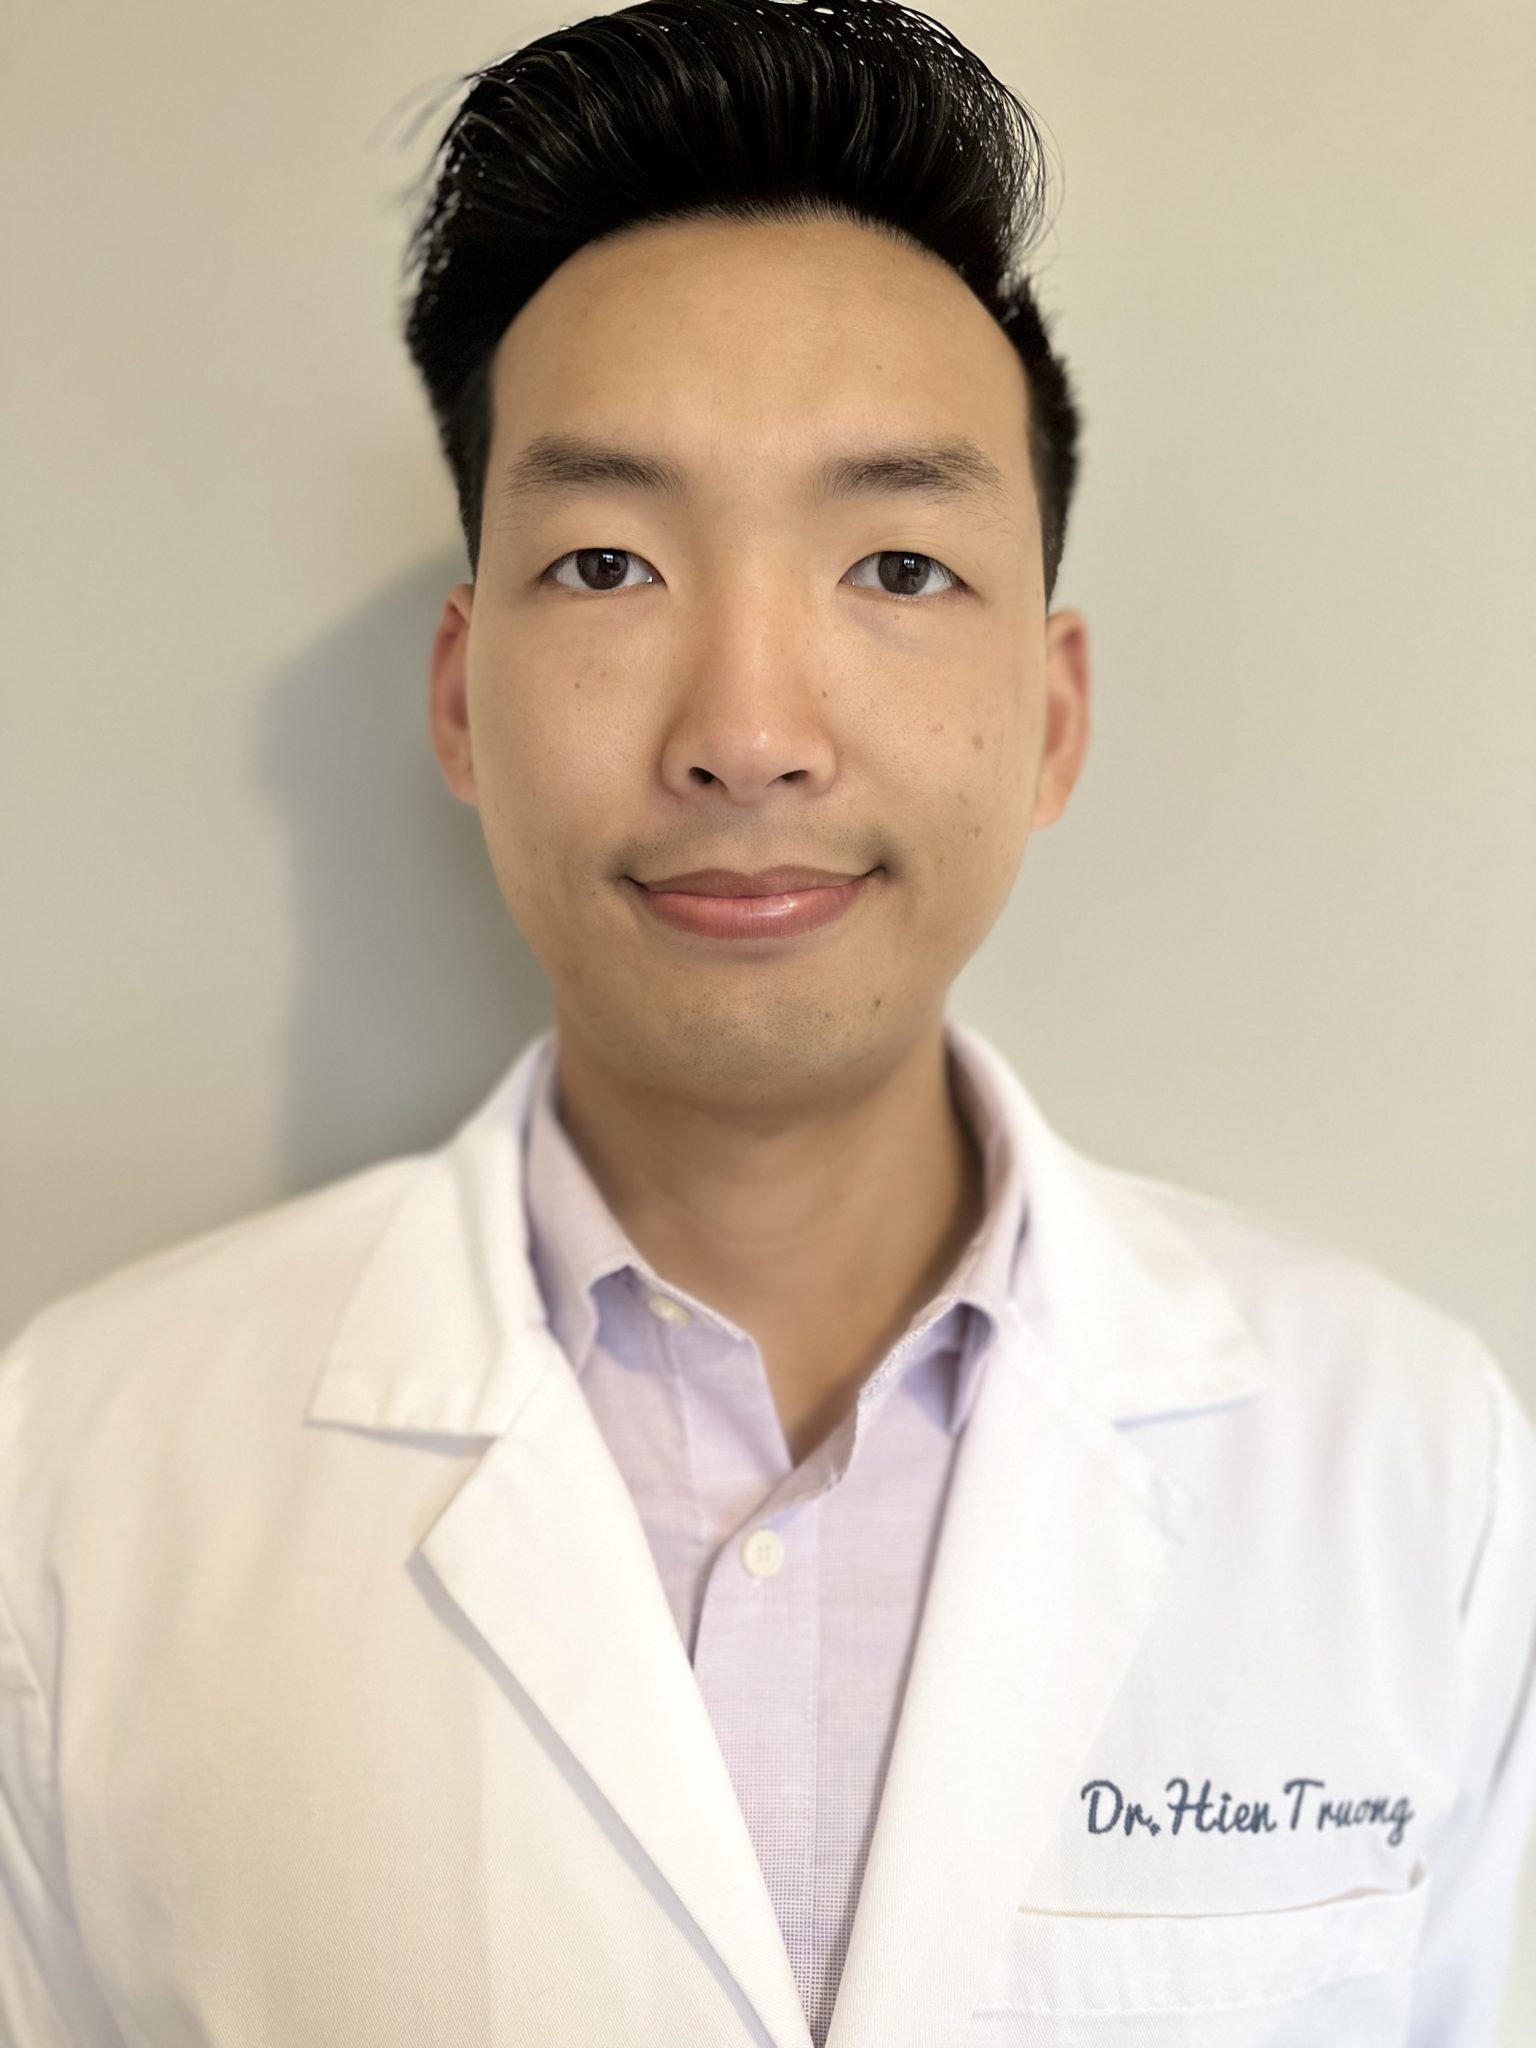 A head shot of Hien Truong, a dentist in Springfield Massachusetts